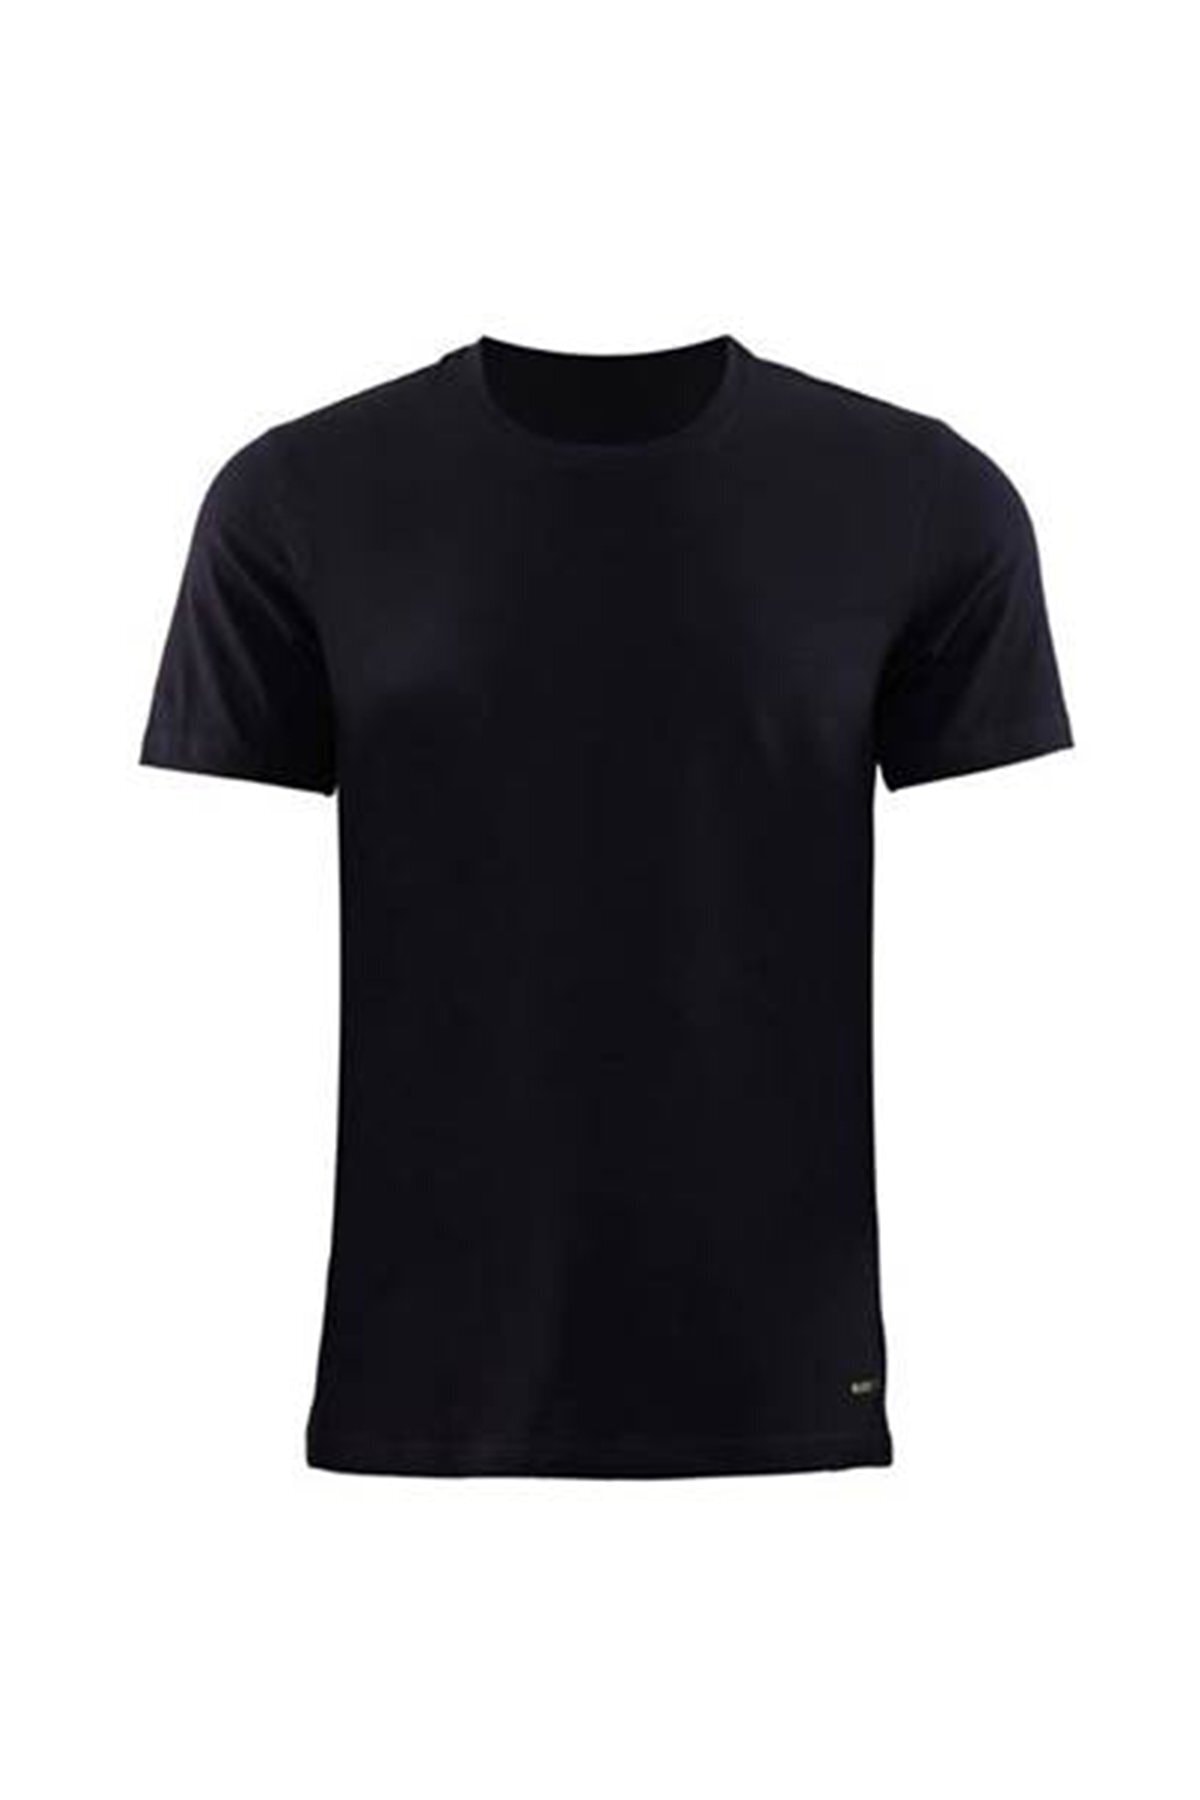 Blackspade Erkek Siyah Tender Cotton T-shirt 9235